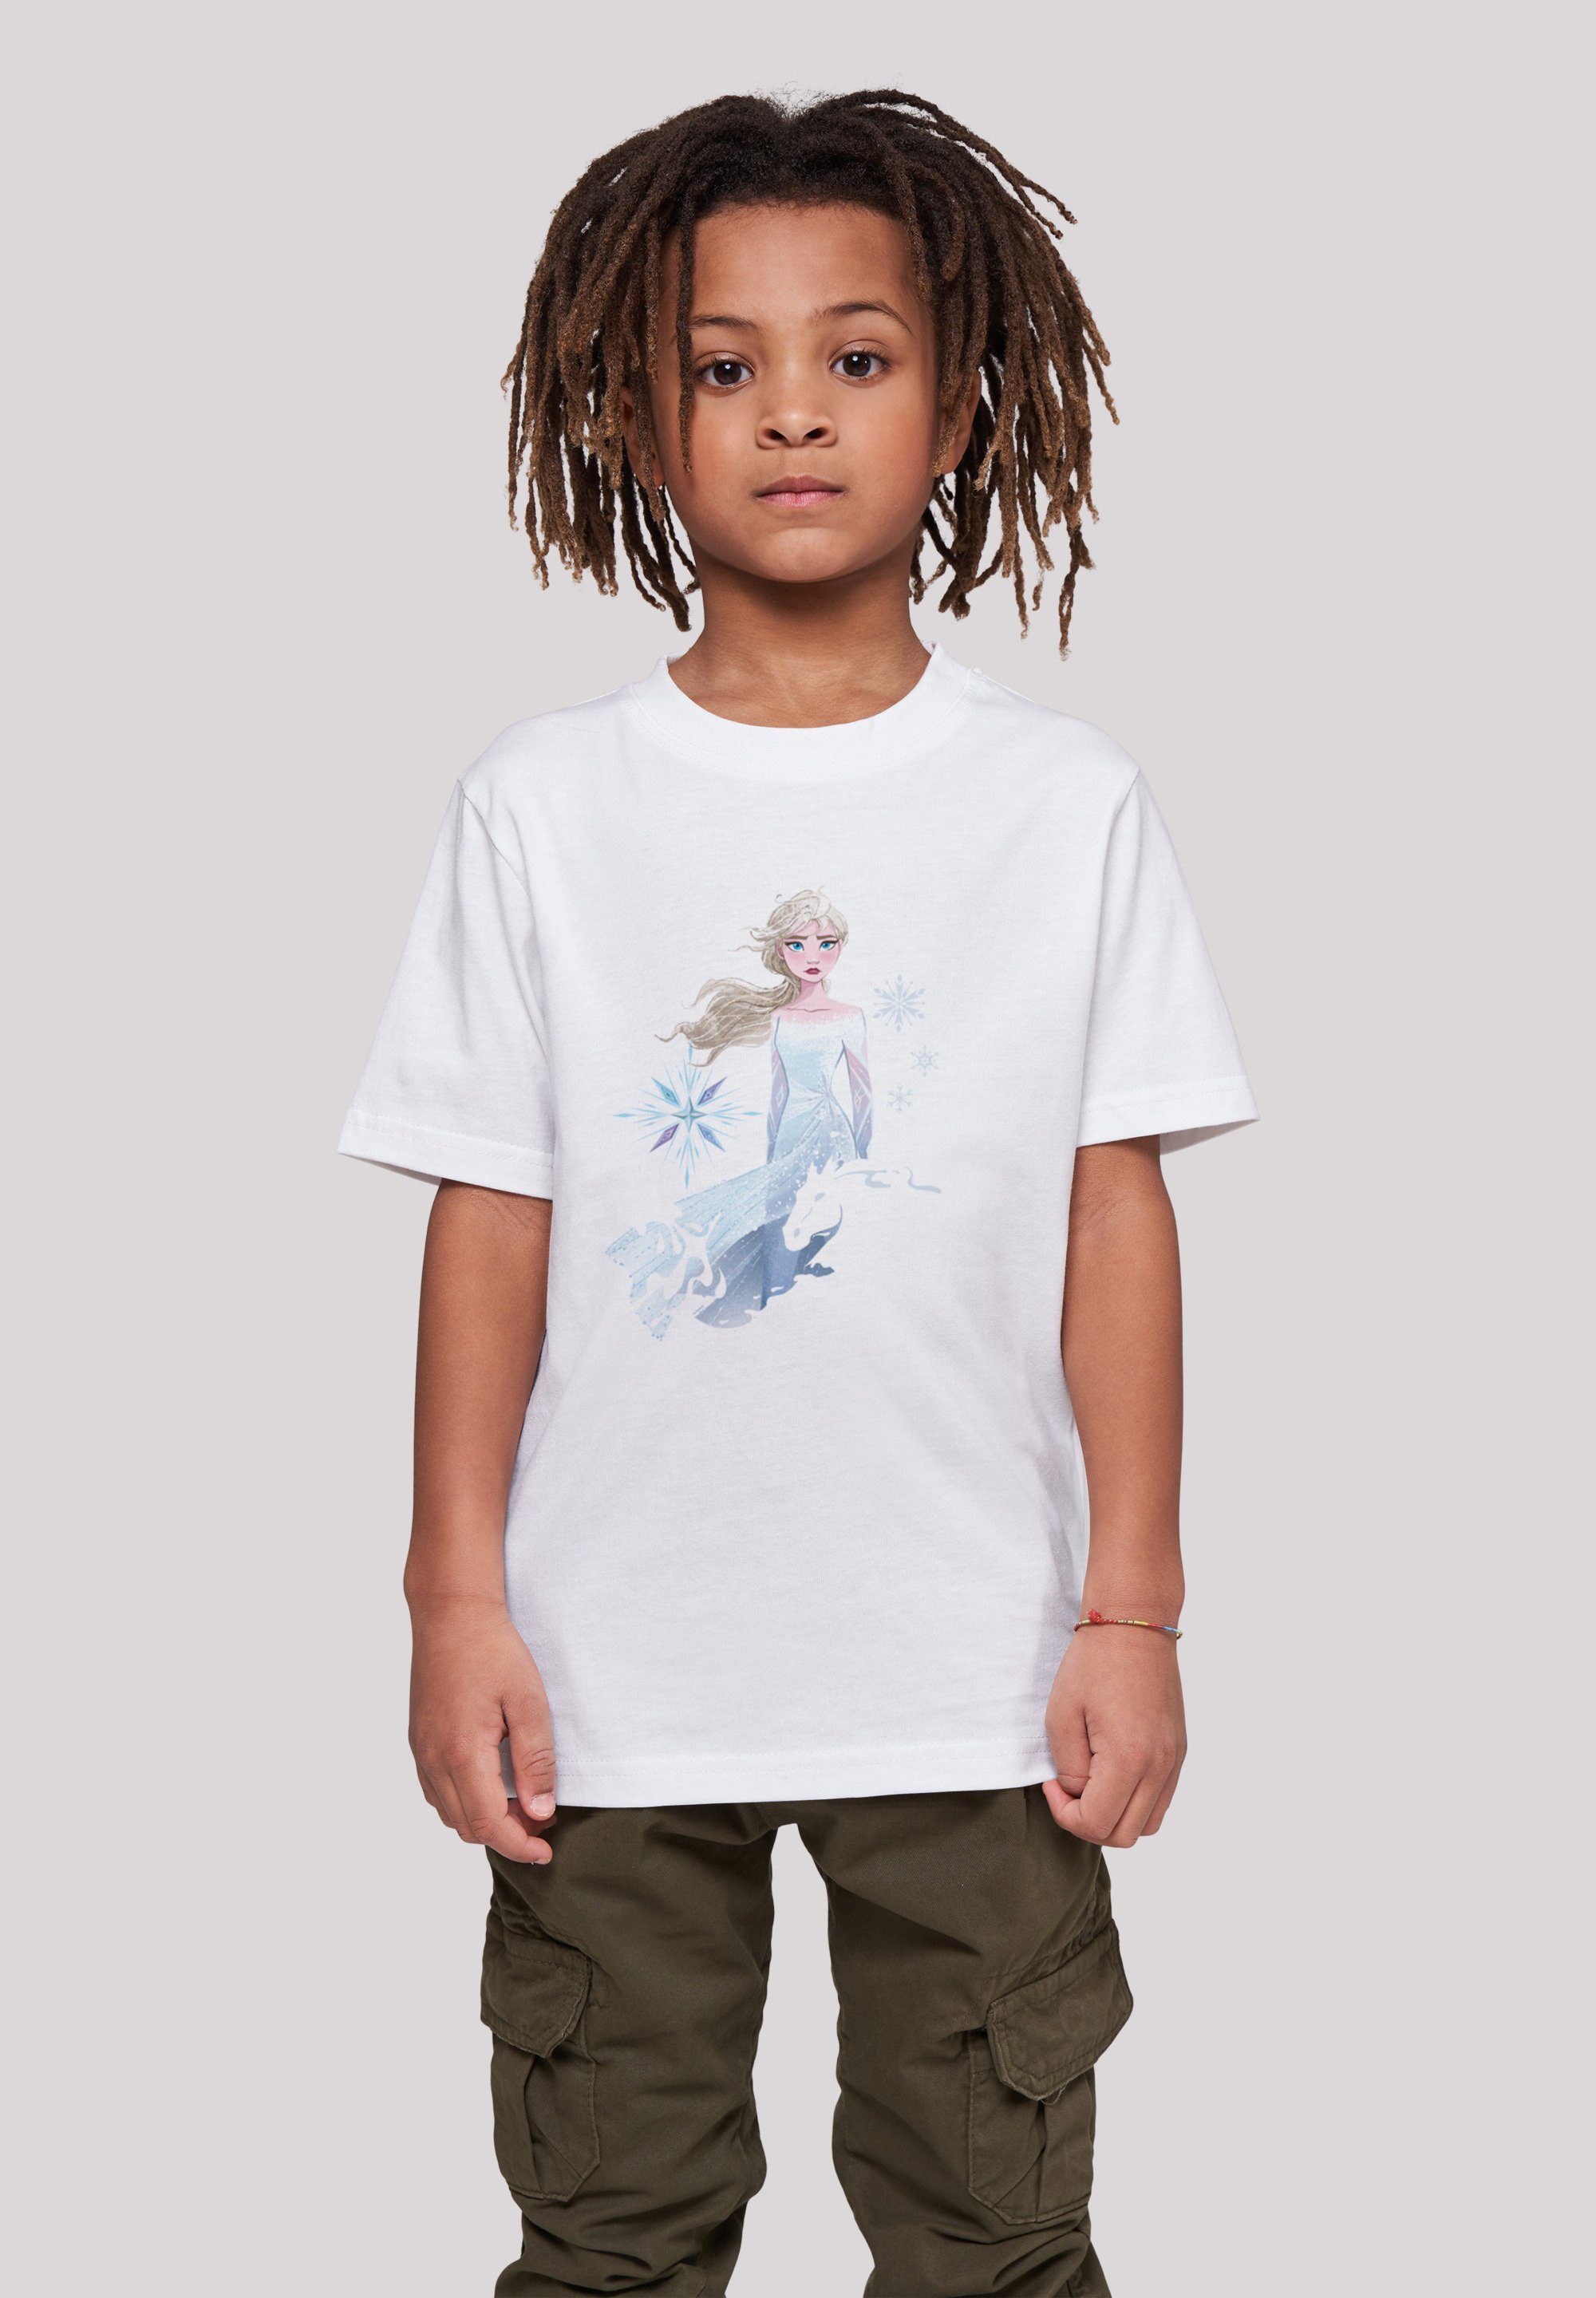 Disney Frozen Merch,Jungen,Mädchen,Bedruckt weiß Unisex Silhouette T-Shirt F4NT4STIC Wassergeist Kinder,Premium Nokk 2 Pferd Elsa